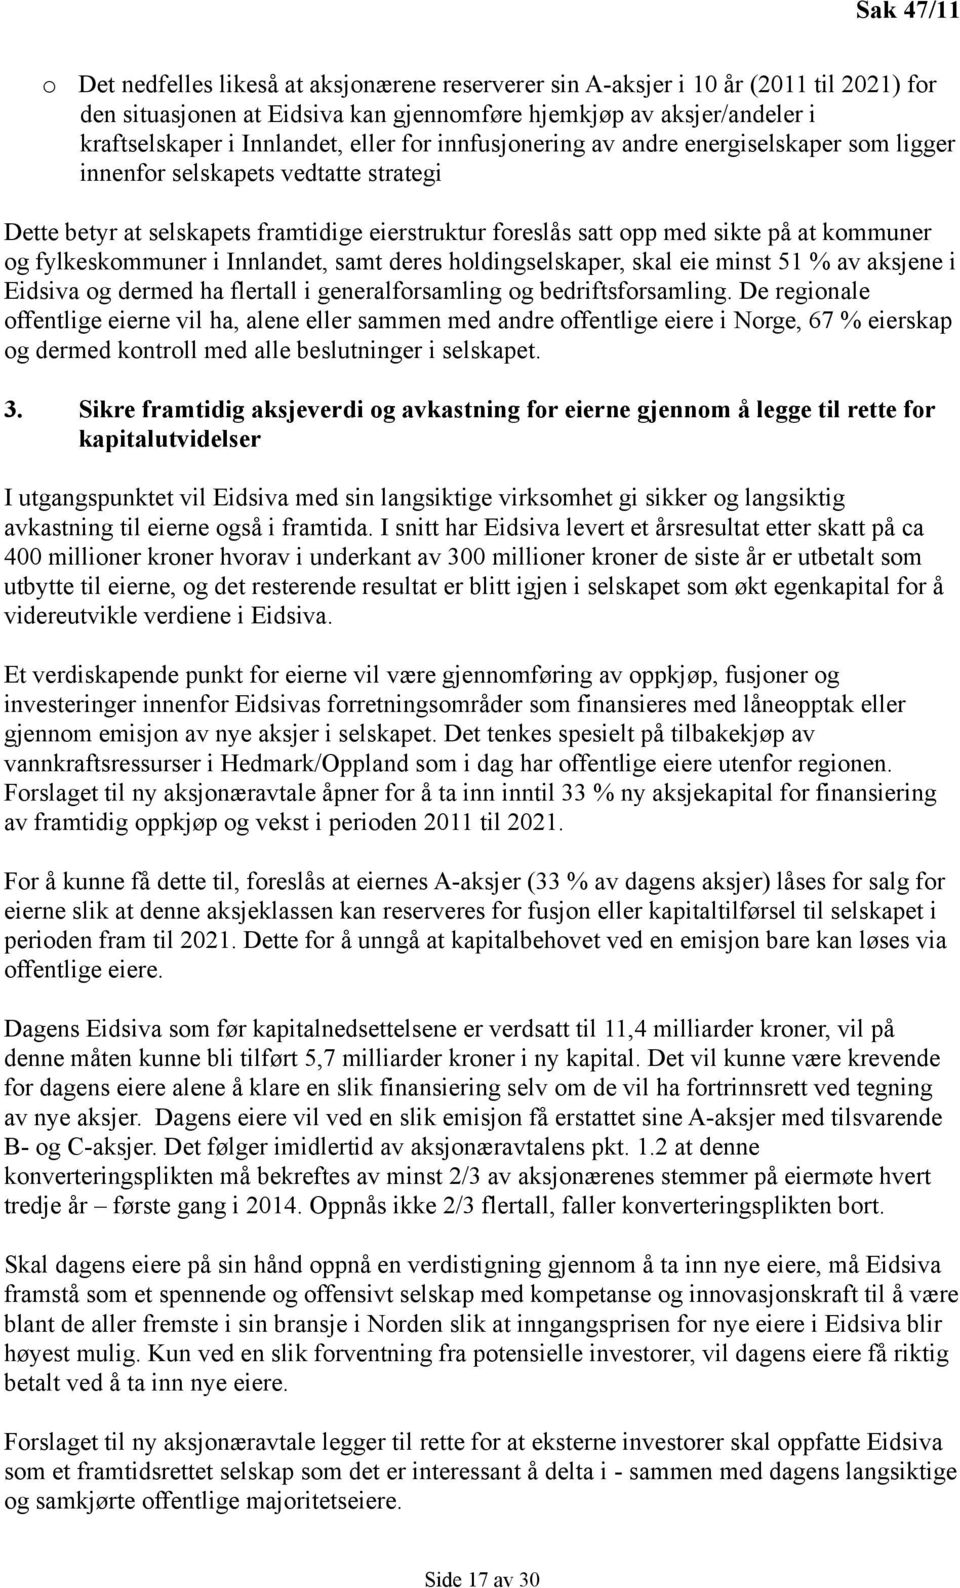 fylkeskommuner i Innlandet, samt deres holdingselskaper, skal eie minst 51 % av aksjene i Eidsiva og dermed ha flertall i generalforsamling og bedriftsforsamling.